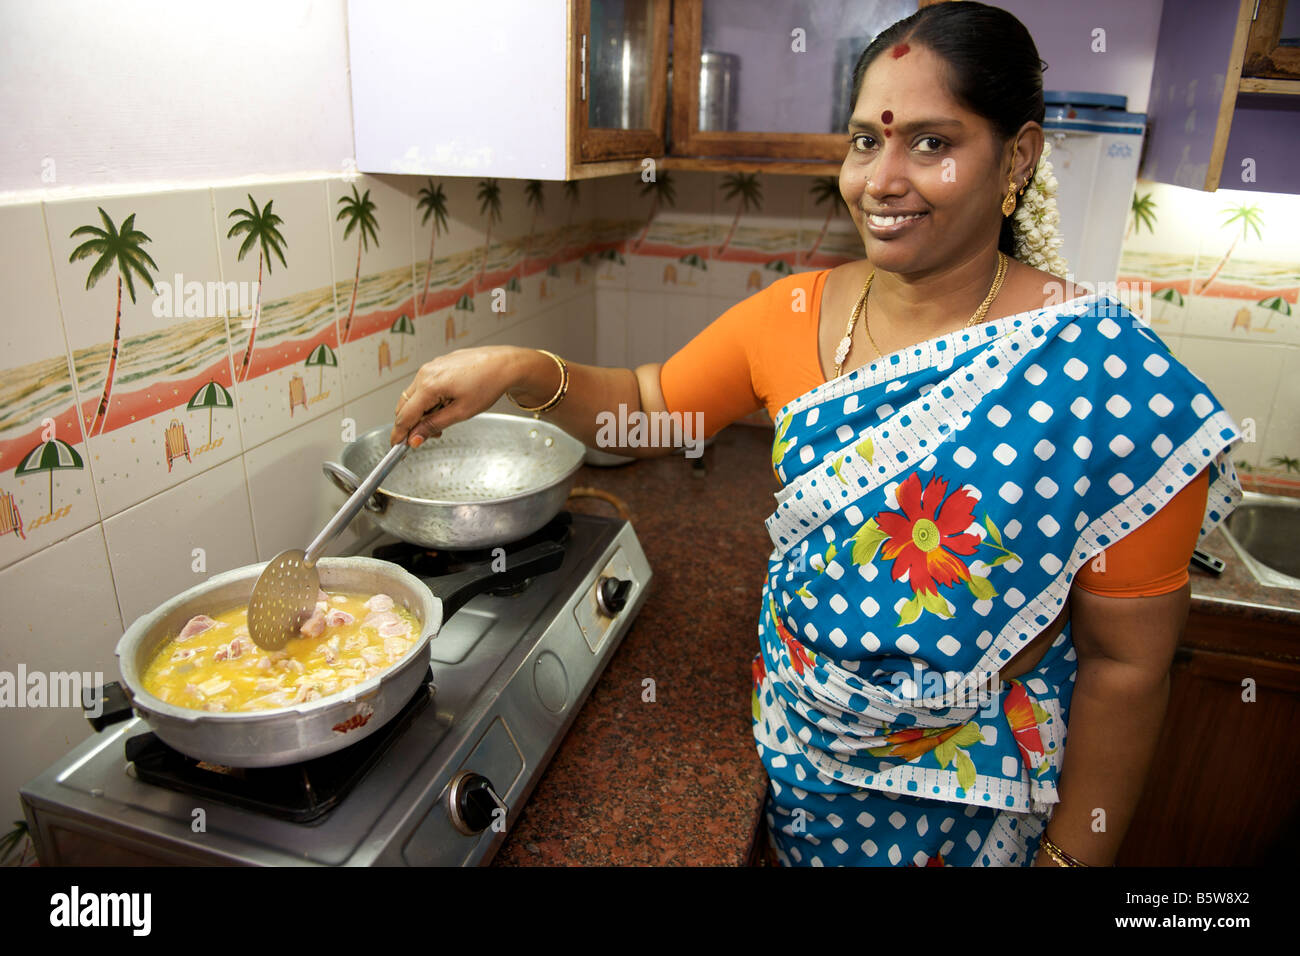 mrs-vijayalakshmi-neelakandan-cooking-a-meat-stew-in-her-kitchen-in-B5W8X2.jpg